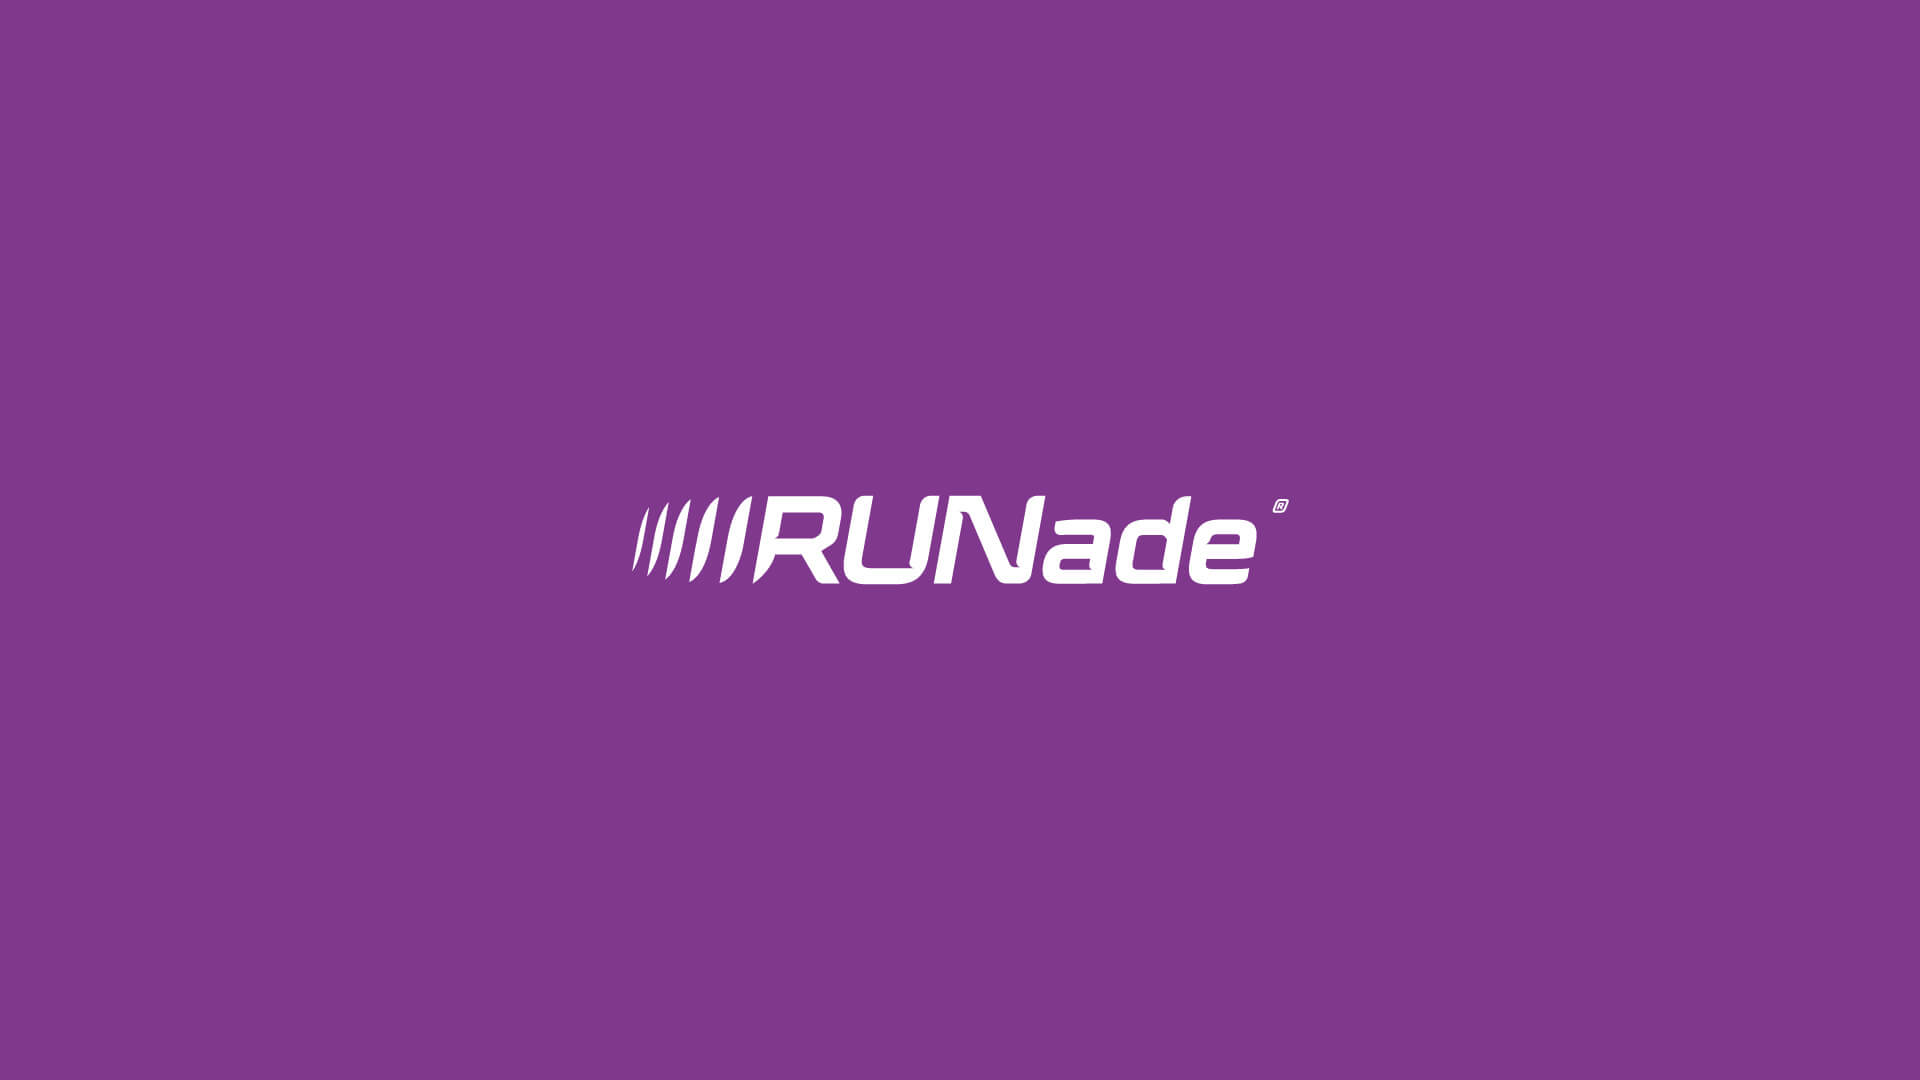 Runade_logo_1